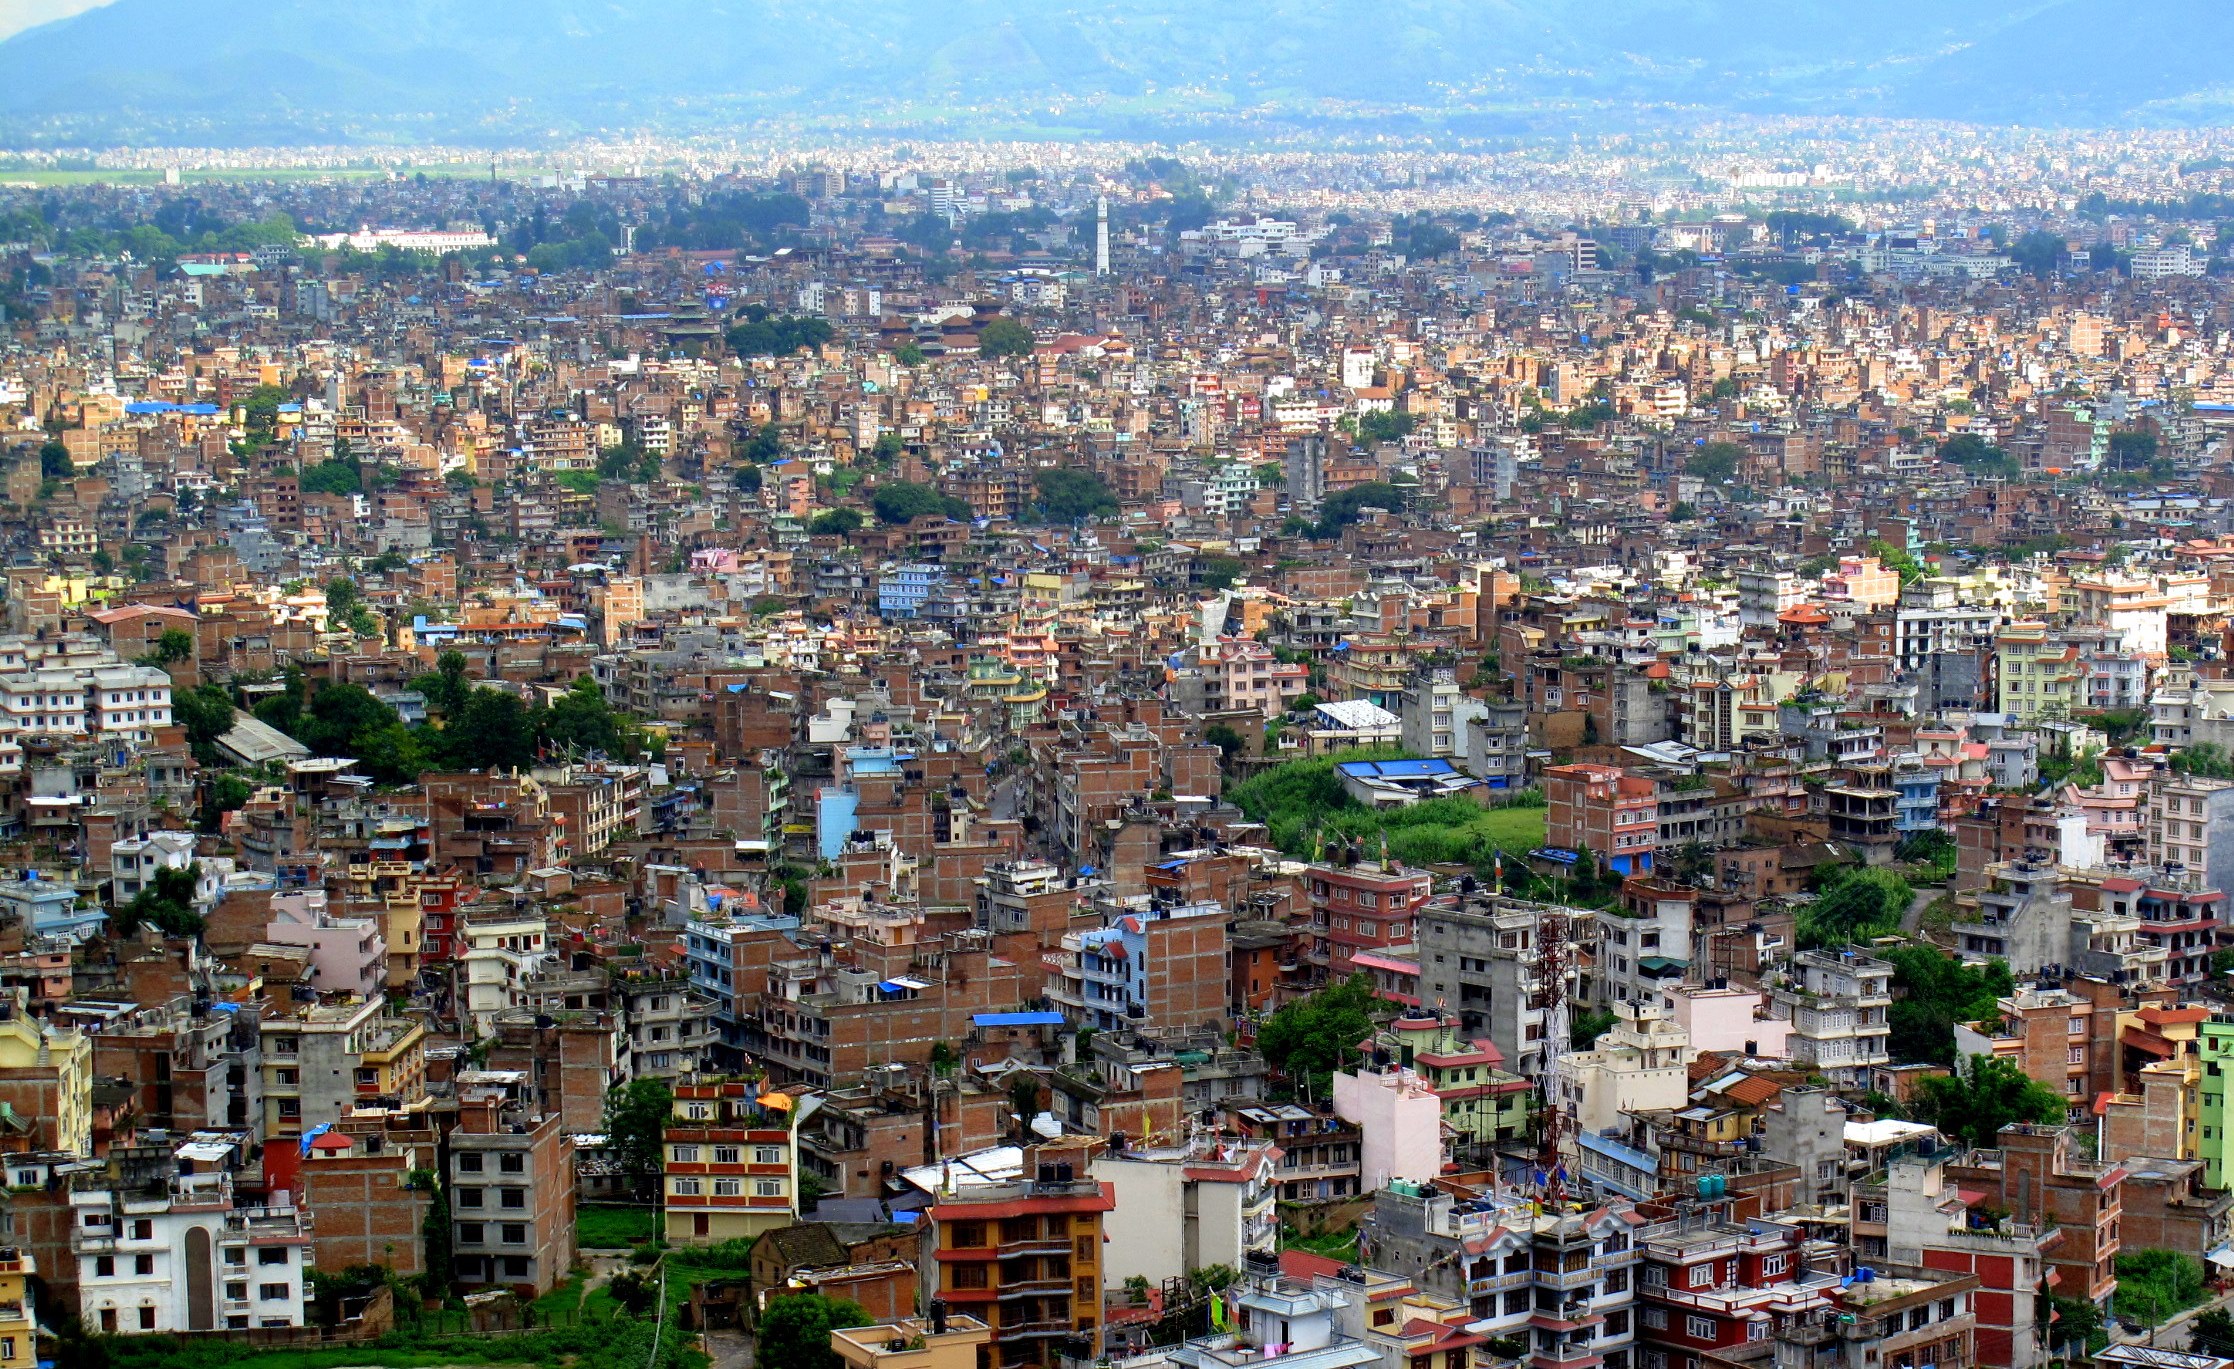 पानी परेपछि काठमाण्डौ उपत्यकासहित देशका धेरै ठाउँमा वायु प्रदूषण कम